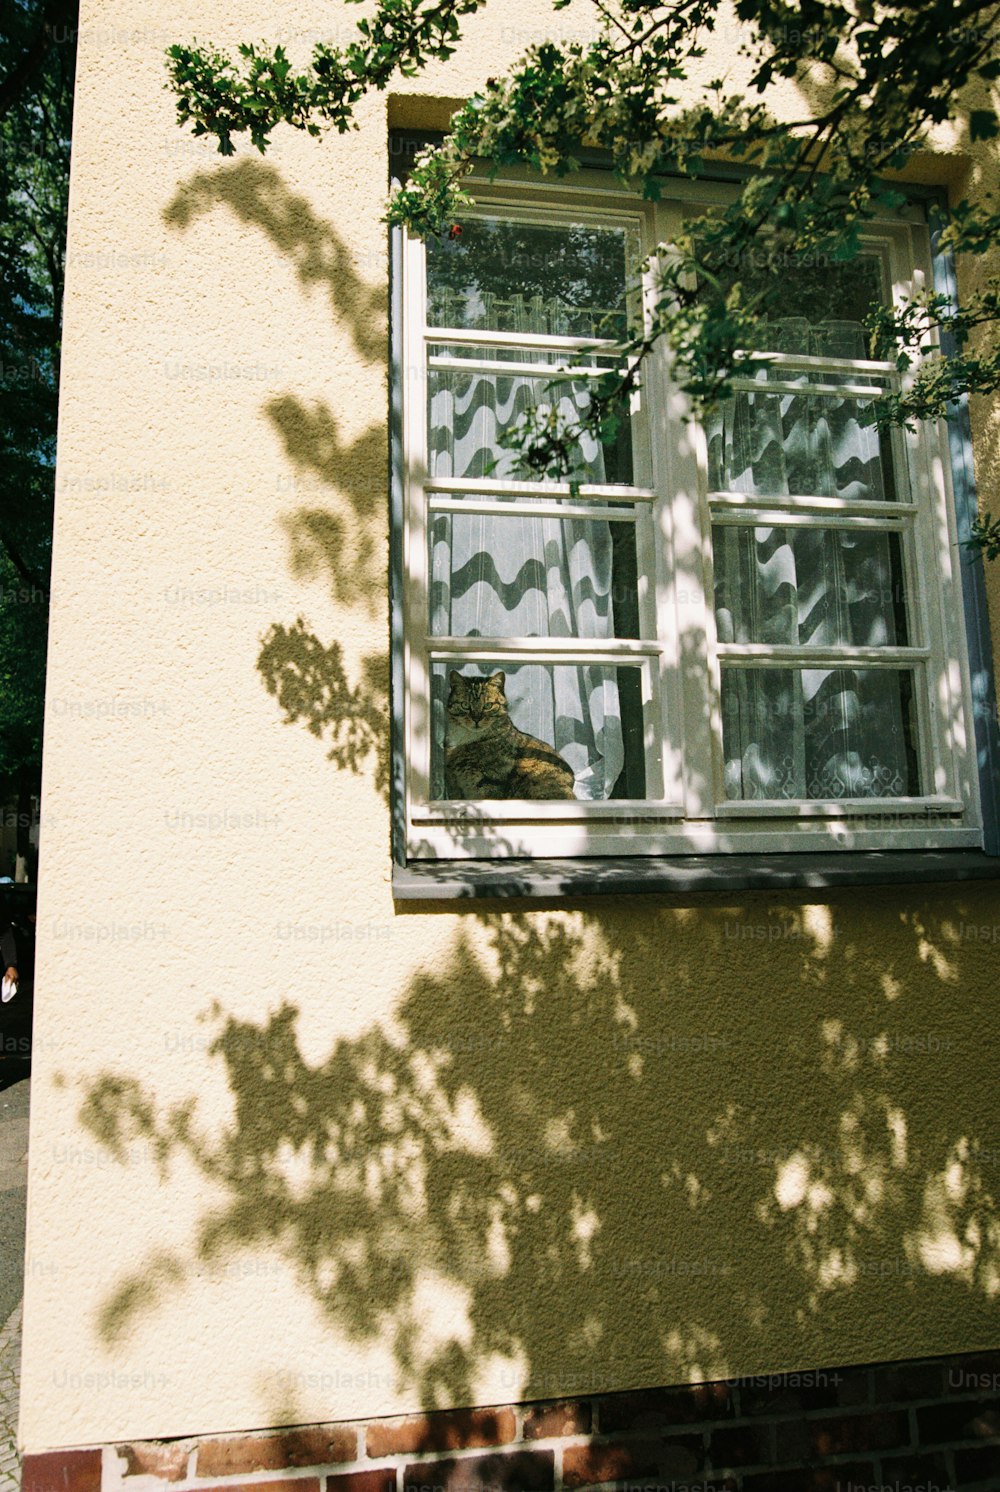 un gato sentado en el alféizar de una ventana mirando por la ventana